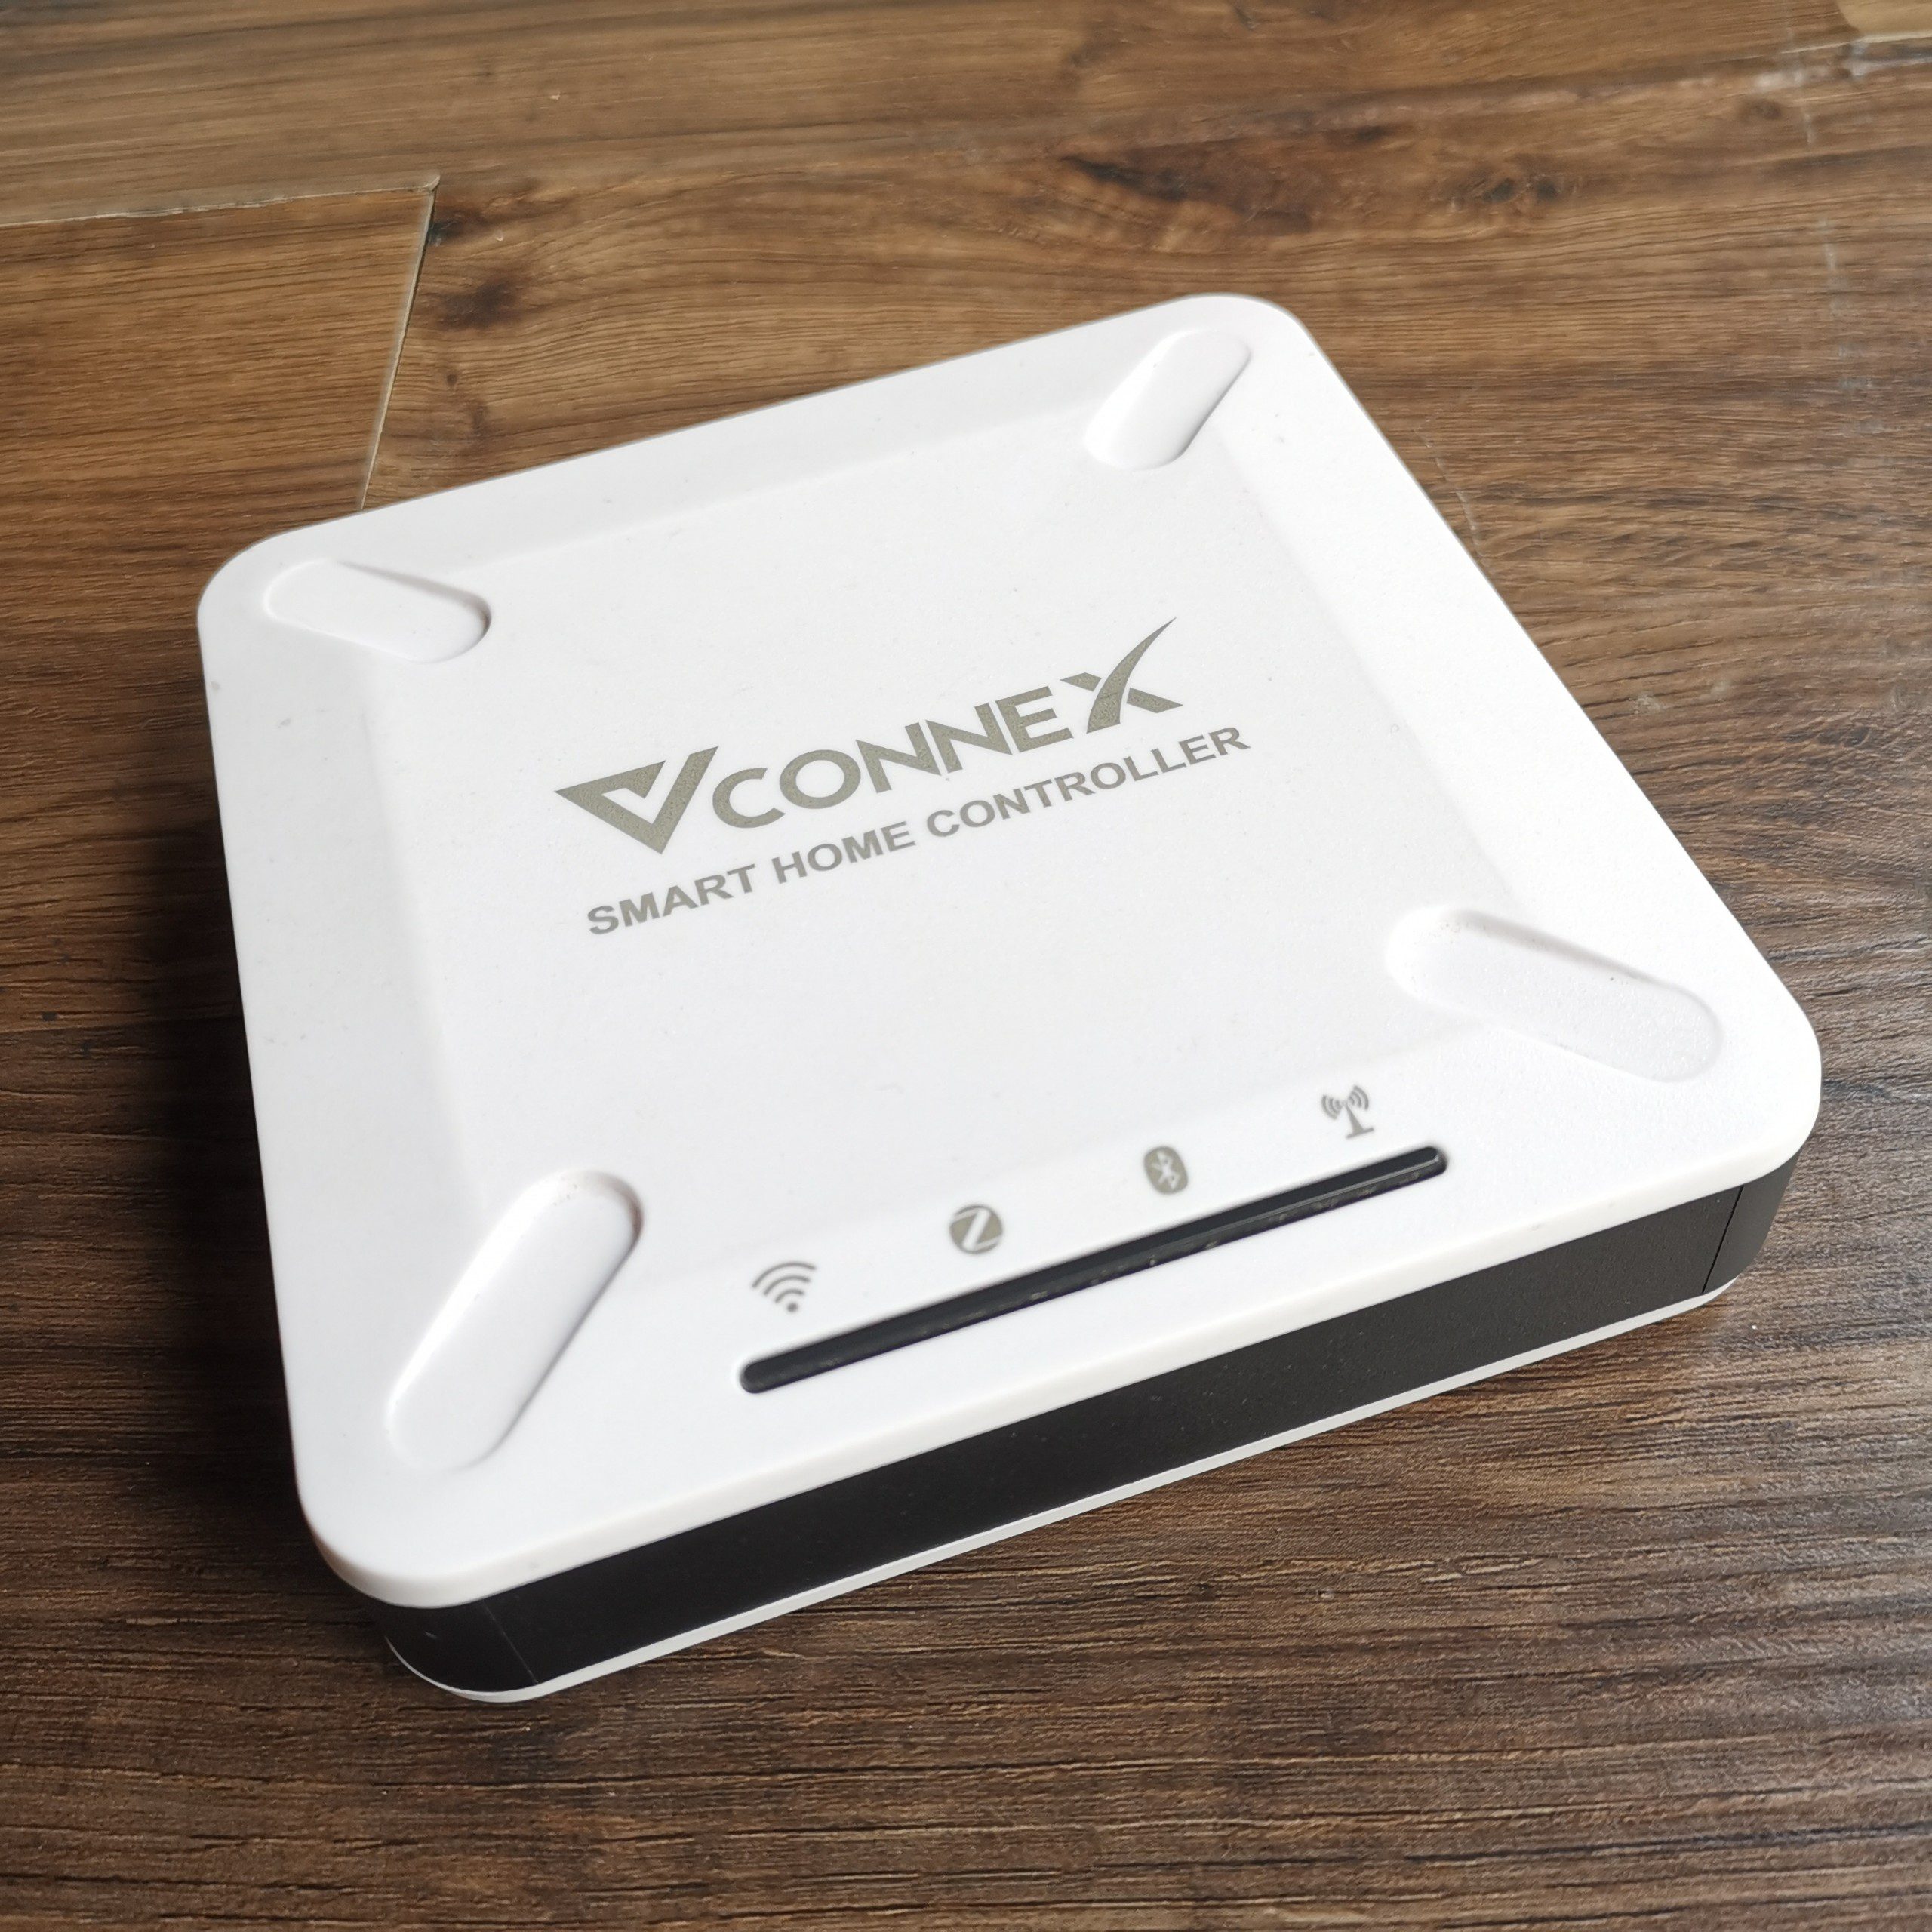 Bộ điều khiển trung tâm Vconnex smarthome Controller